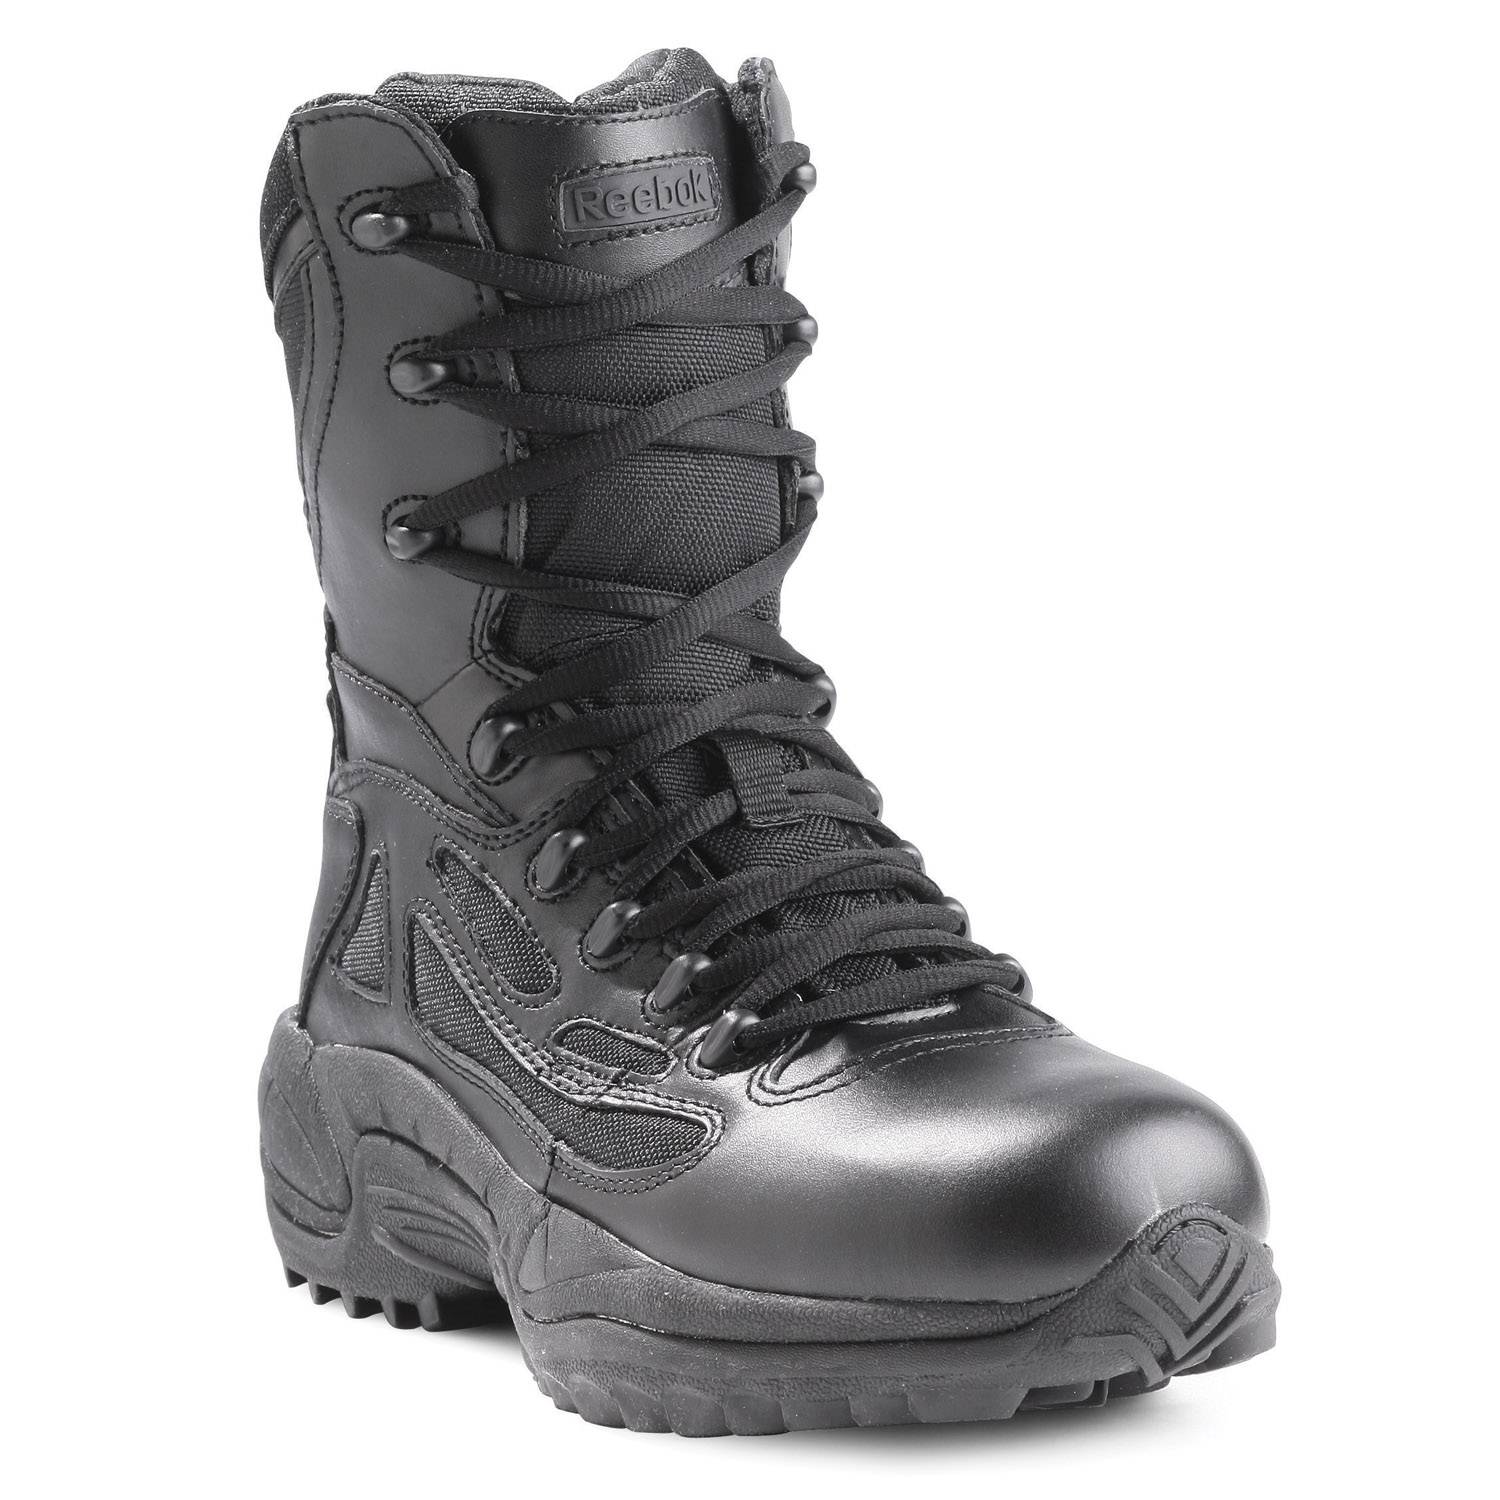 Reebok Women's 8" Rapid Response Side Zip Tactical Boots